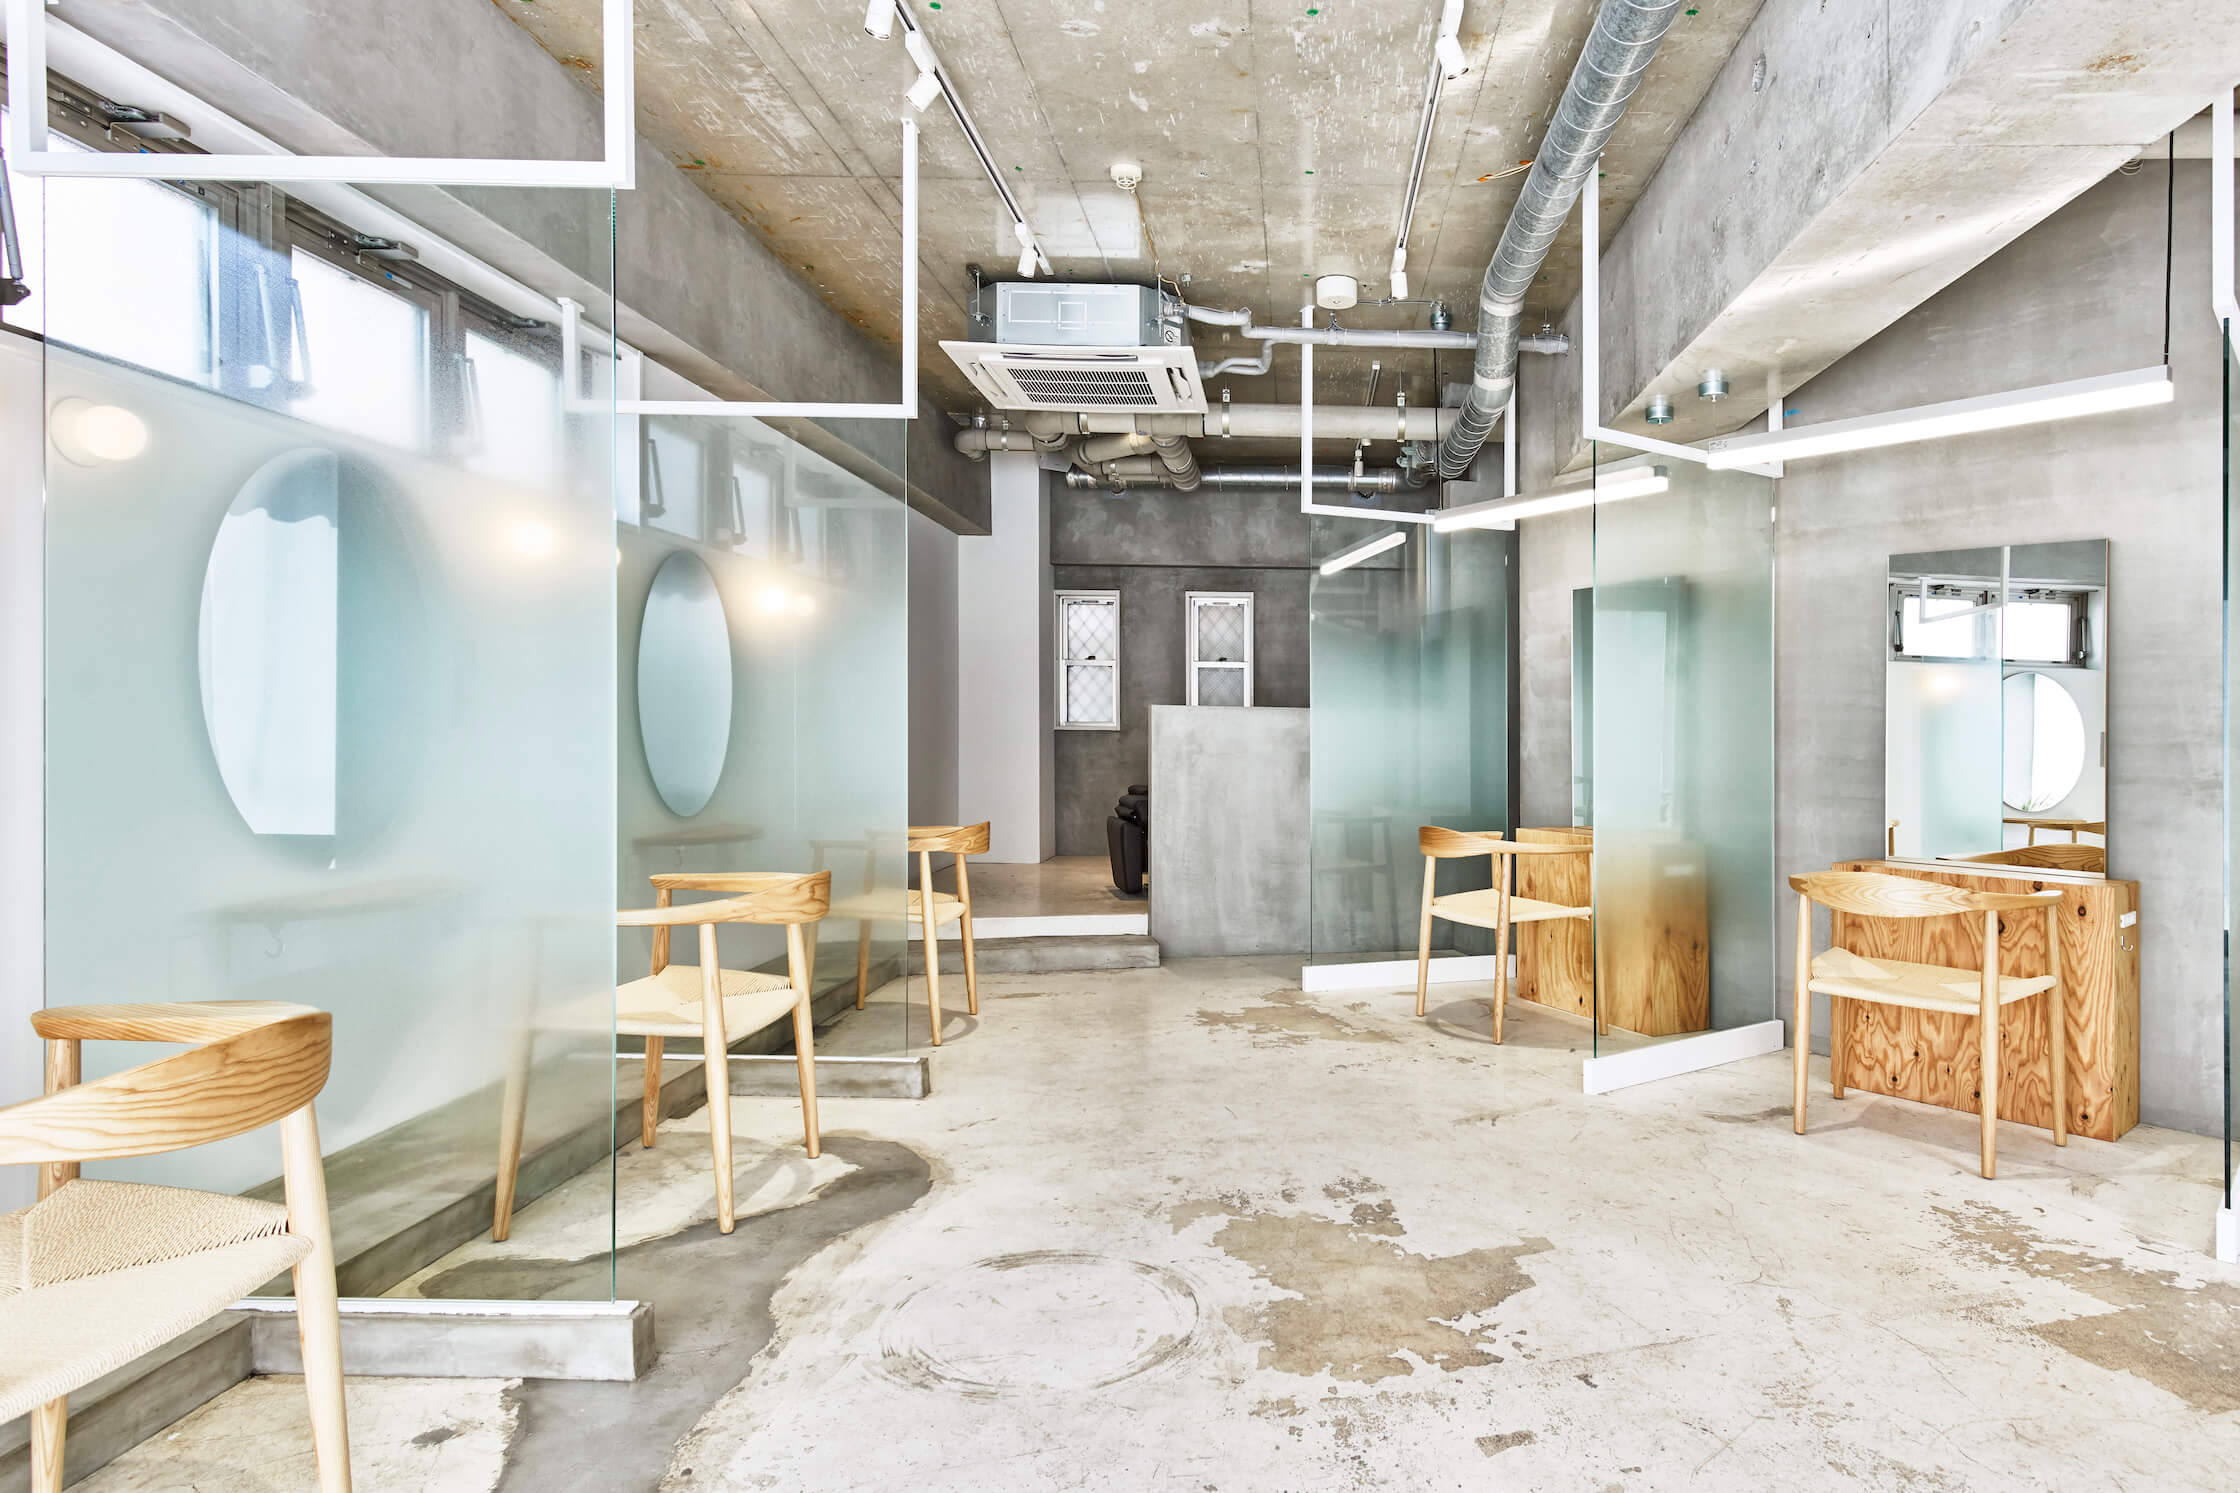 デザインイメージから考える美容室内装の最注目ポイント Vakel バケル 店舗設計 空間デザイン 内装施工 美容室 サロン 飲食店 病院 オフィス クリニックの内装はお任せください